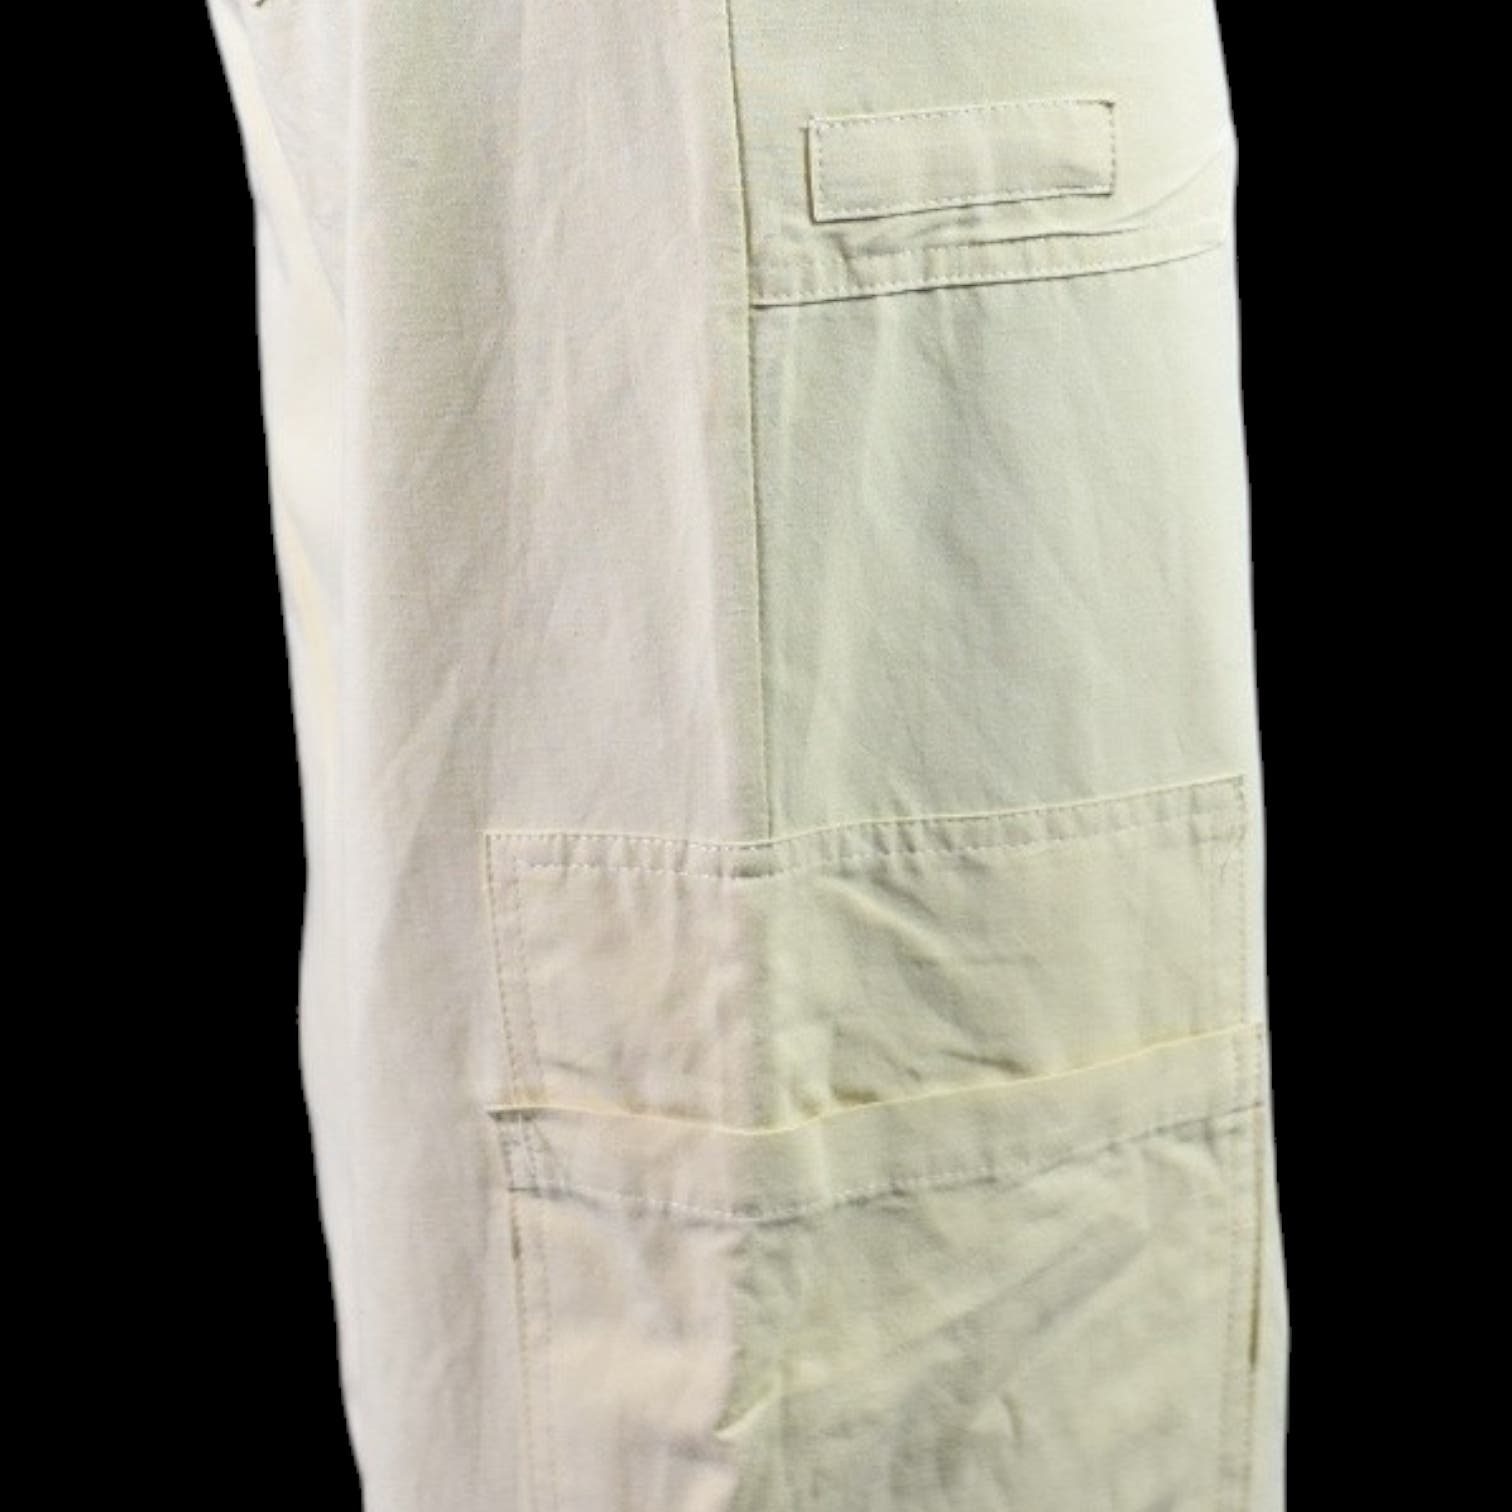 Zara Cargo Linen Blend Wide Leg Pants Yellow Tan Flare High Waist Trouser Size Small